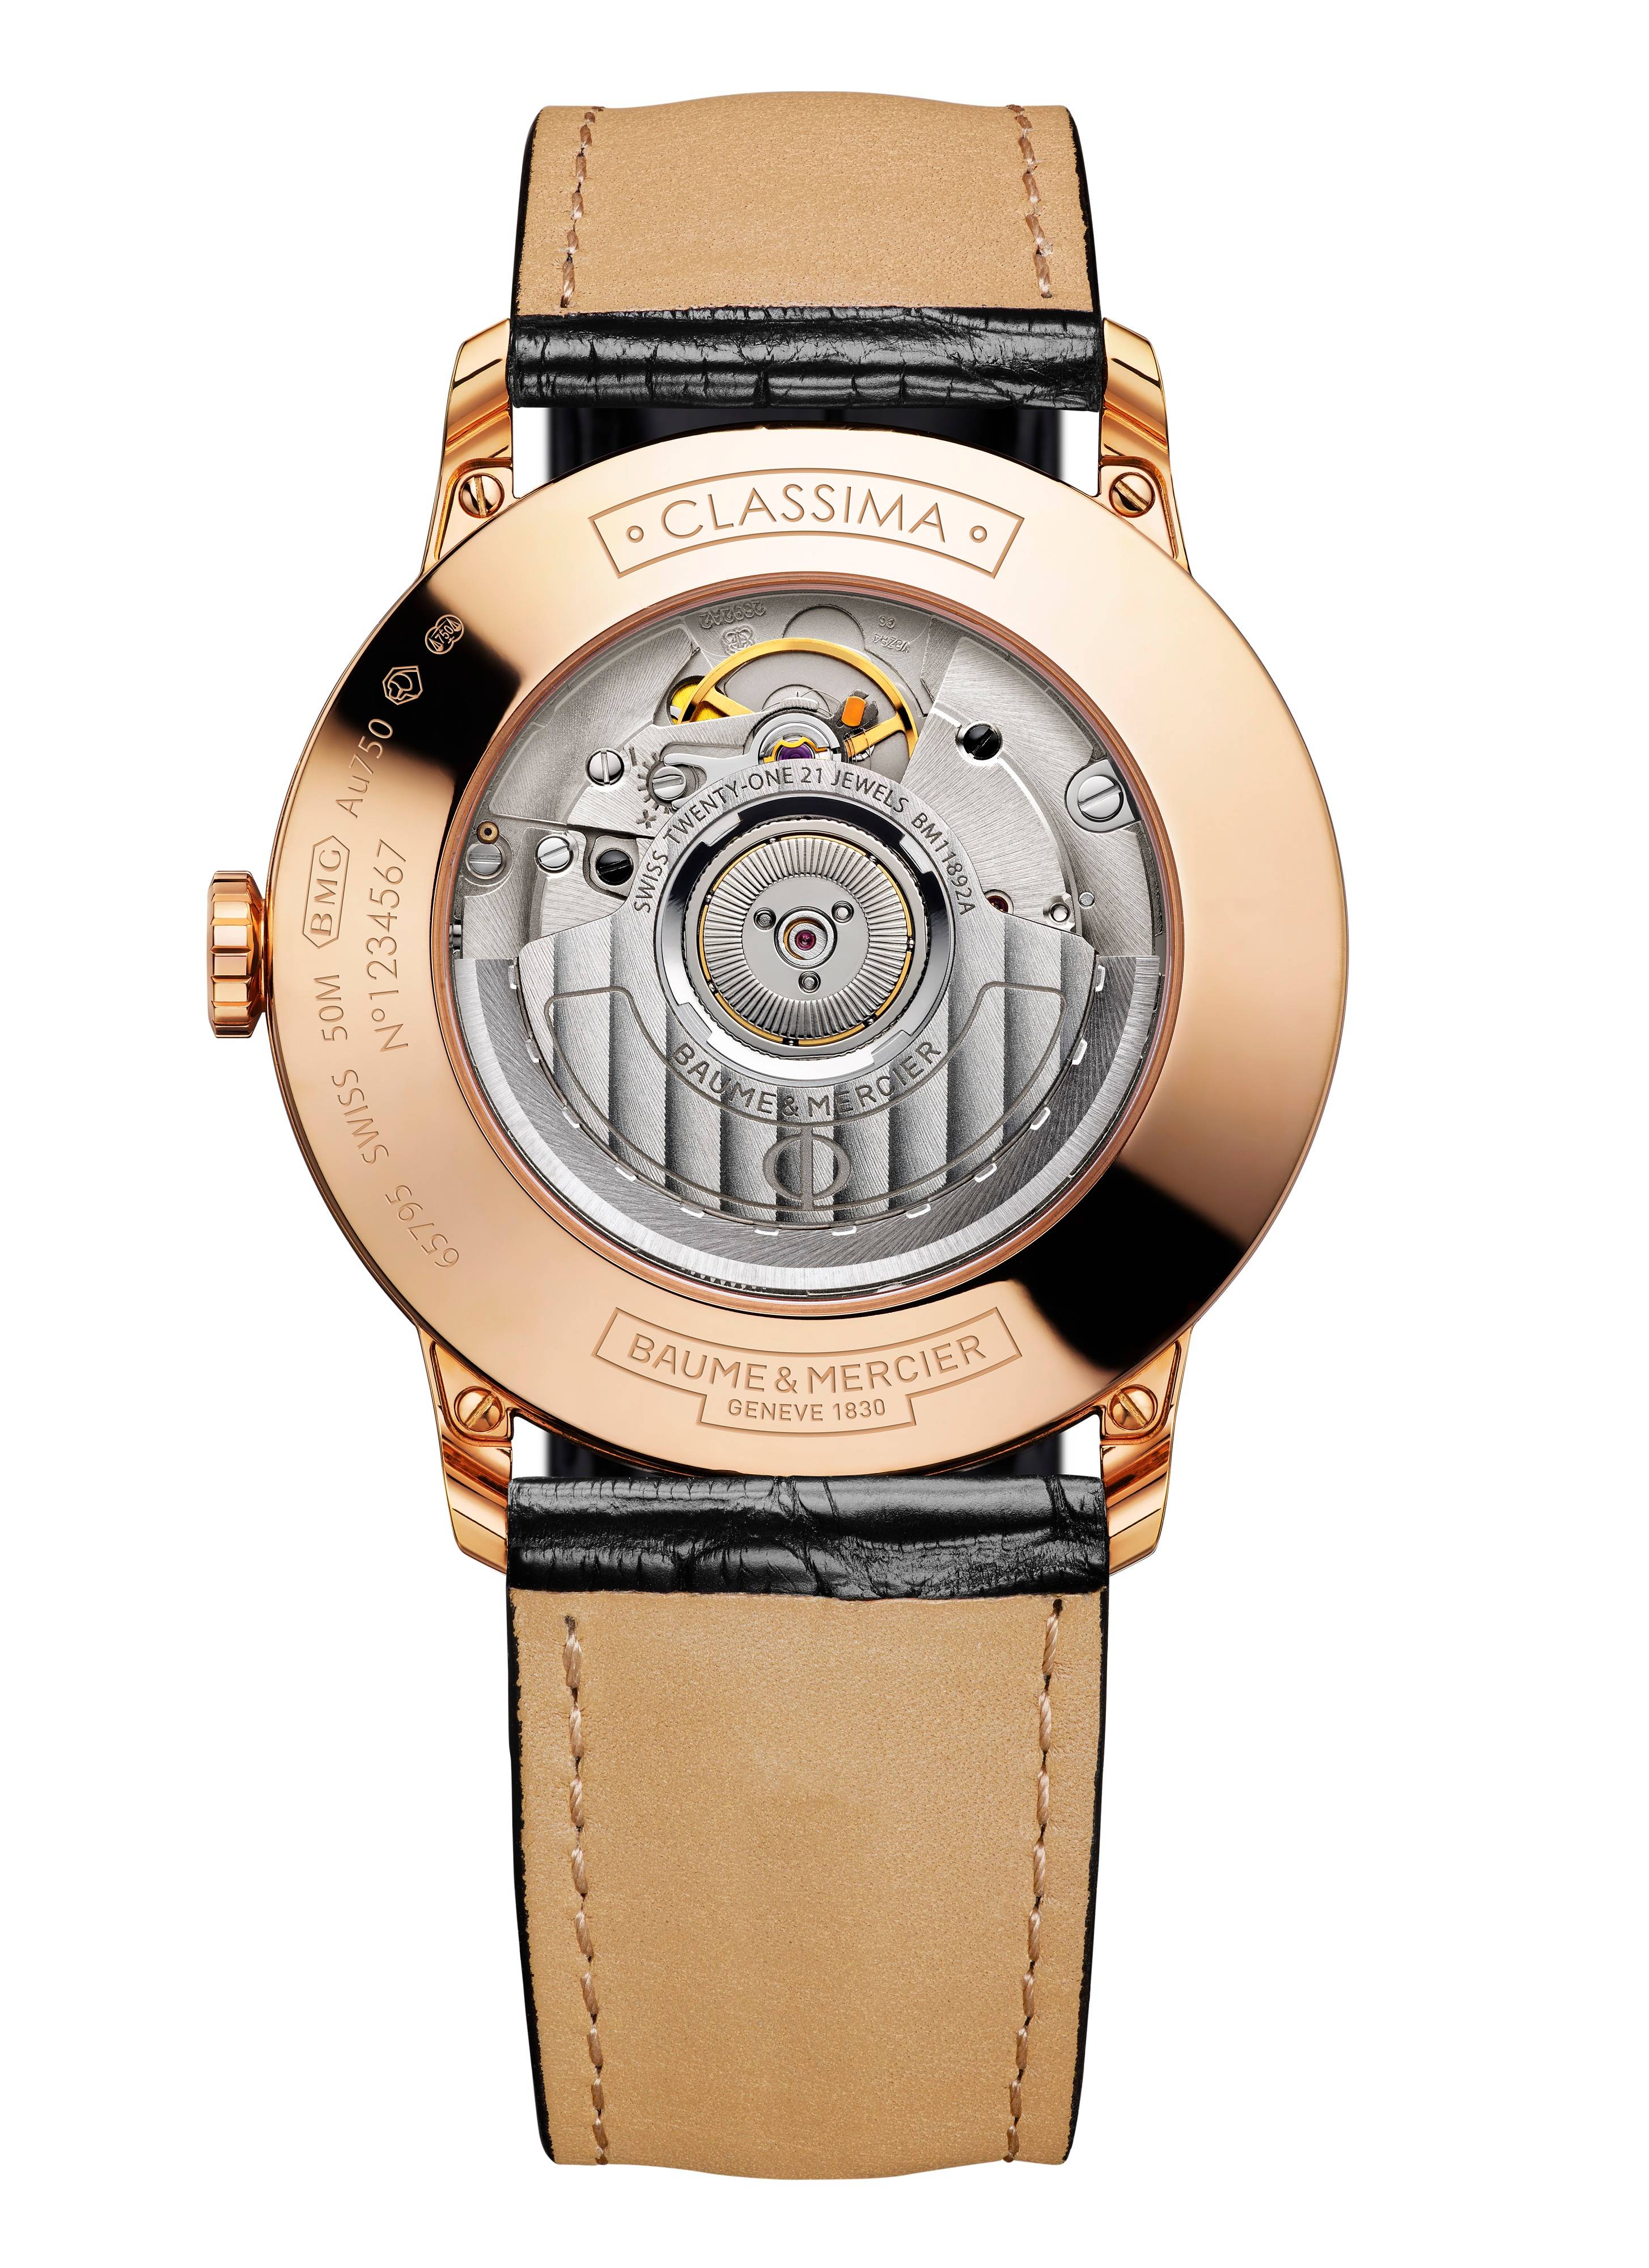 La montre Classima 10271 de Baume & Mercier